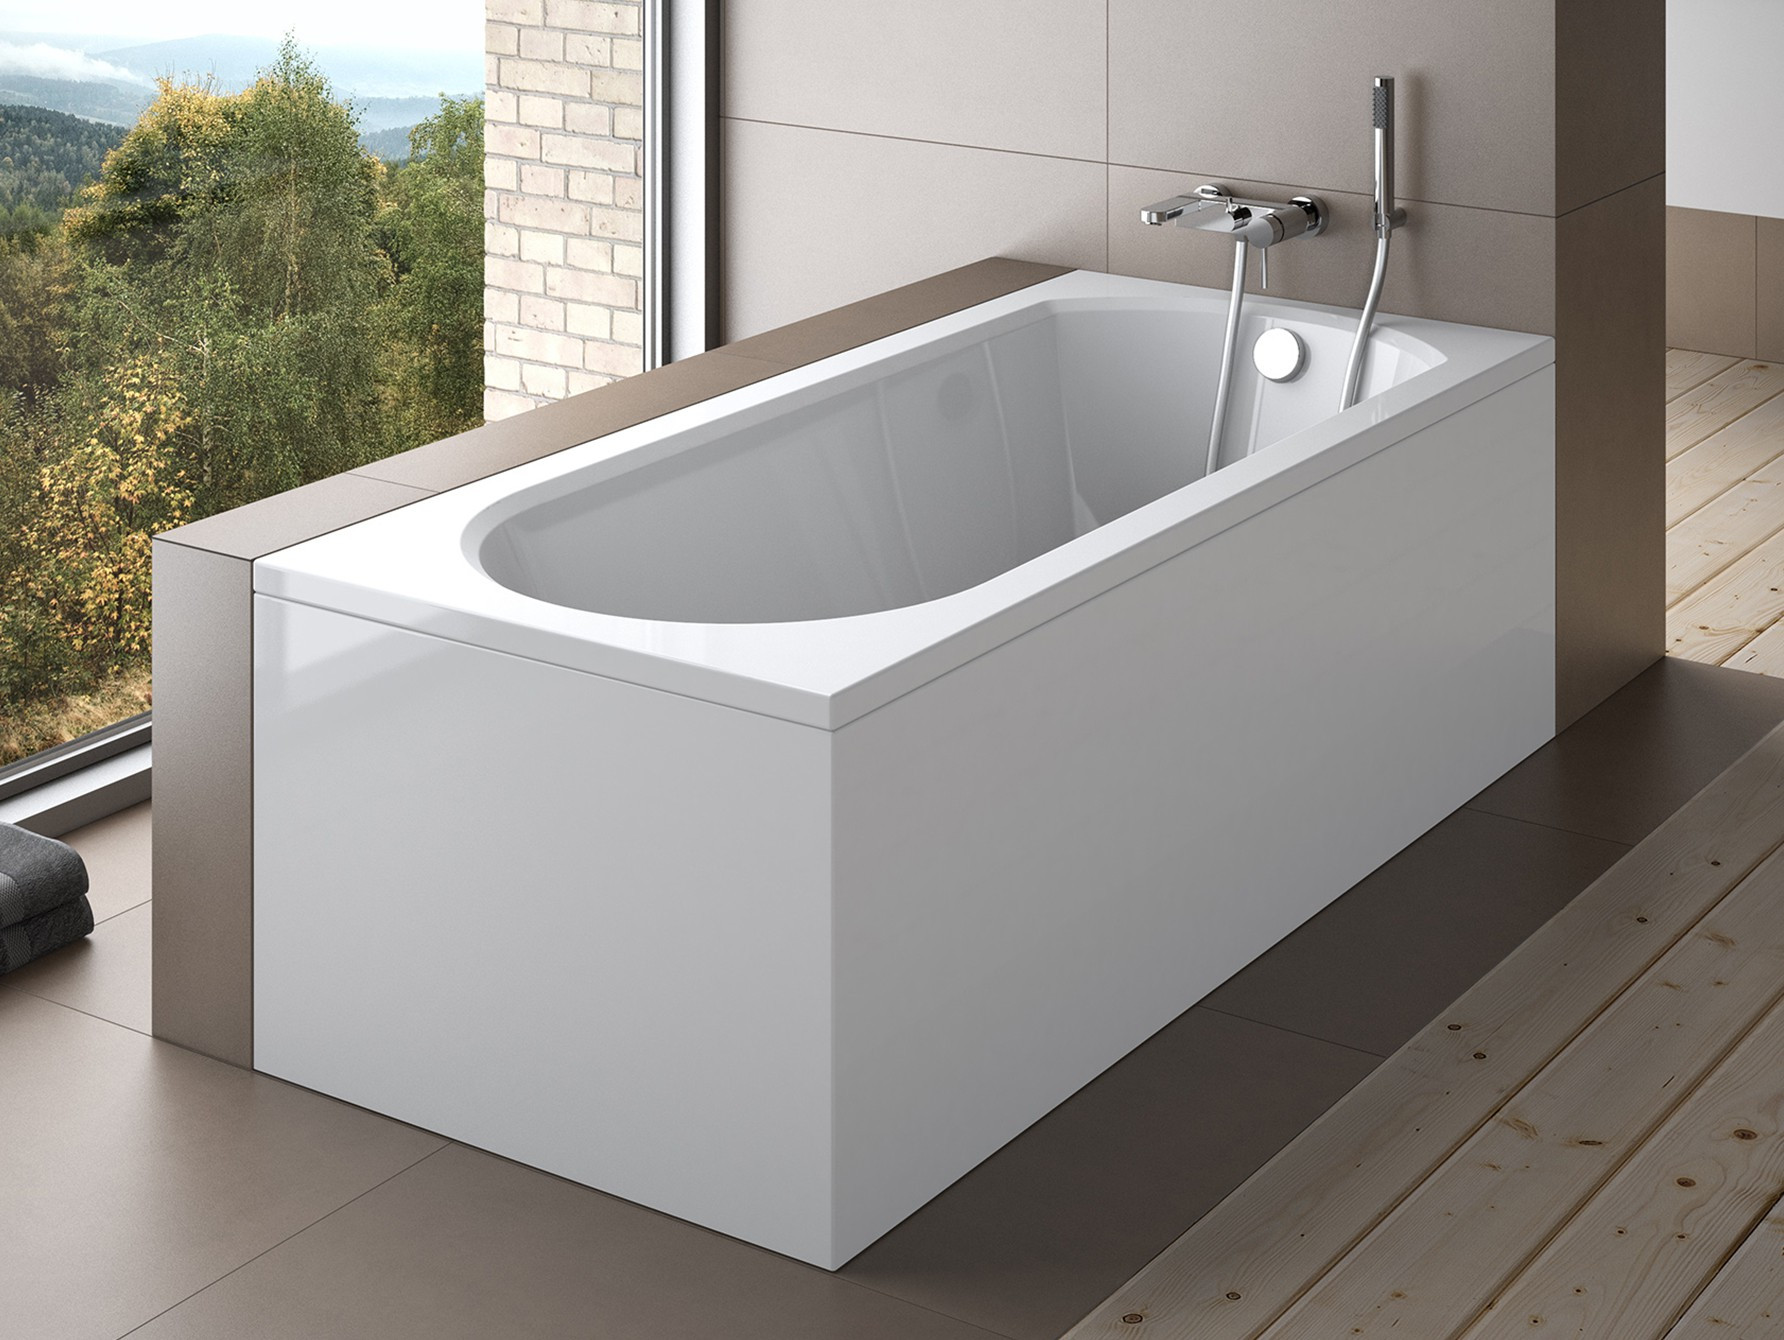 Baignoire TRINITA- baignoire design - mobilier salle de bain design